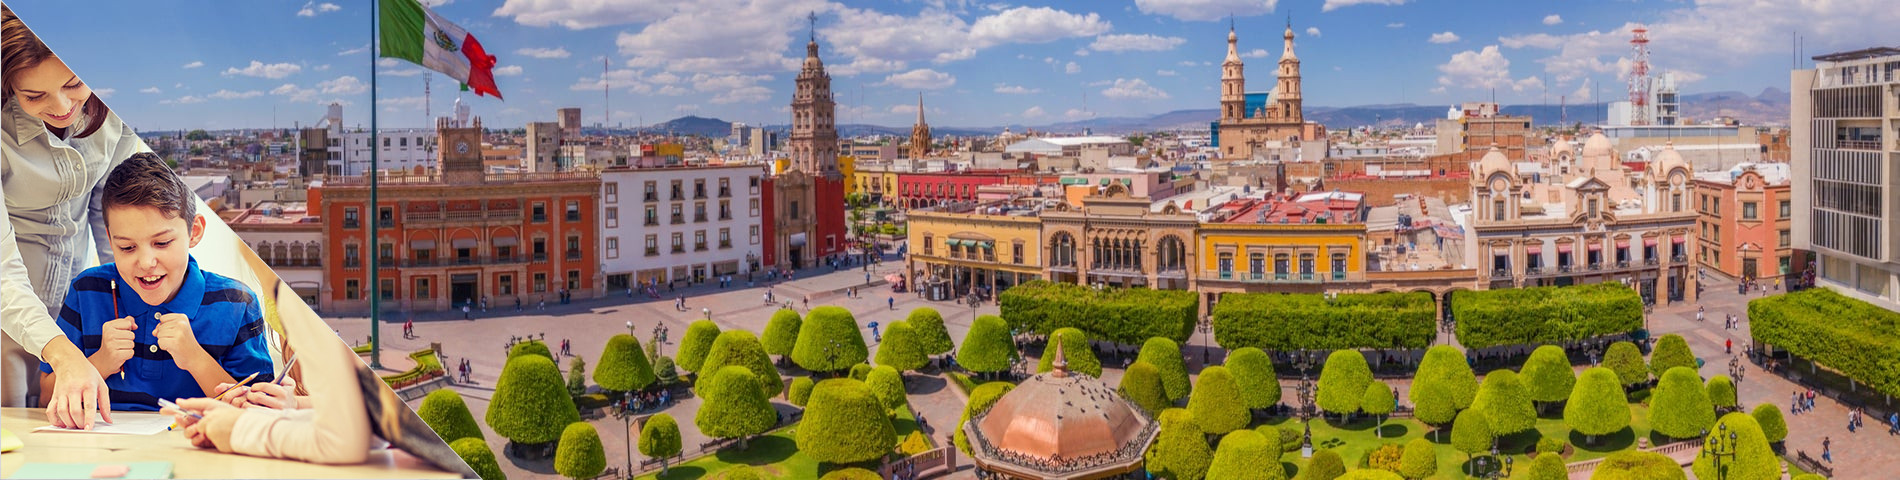 Guanajuato - Spanisch für Lehrer